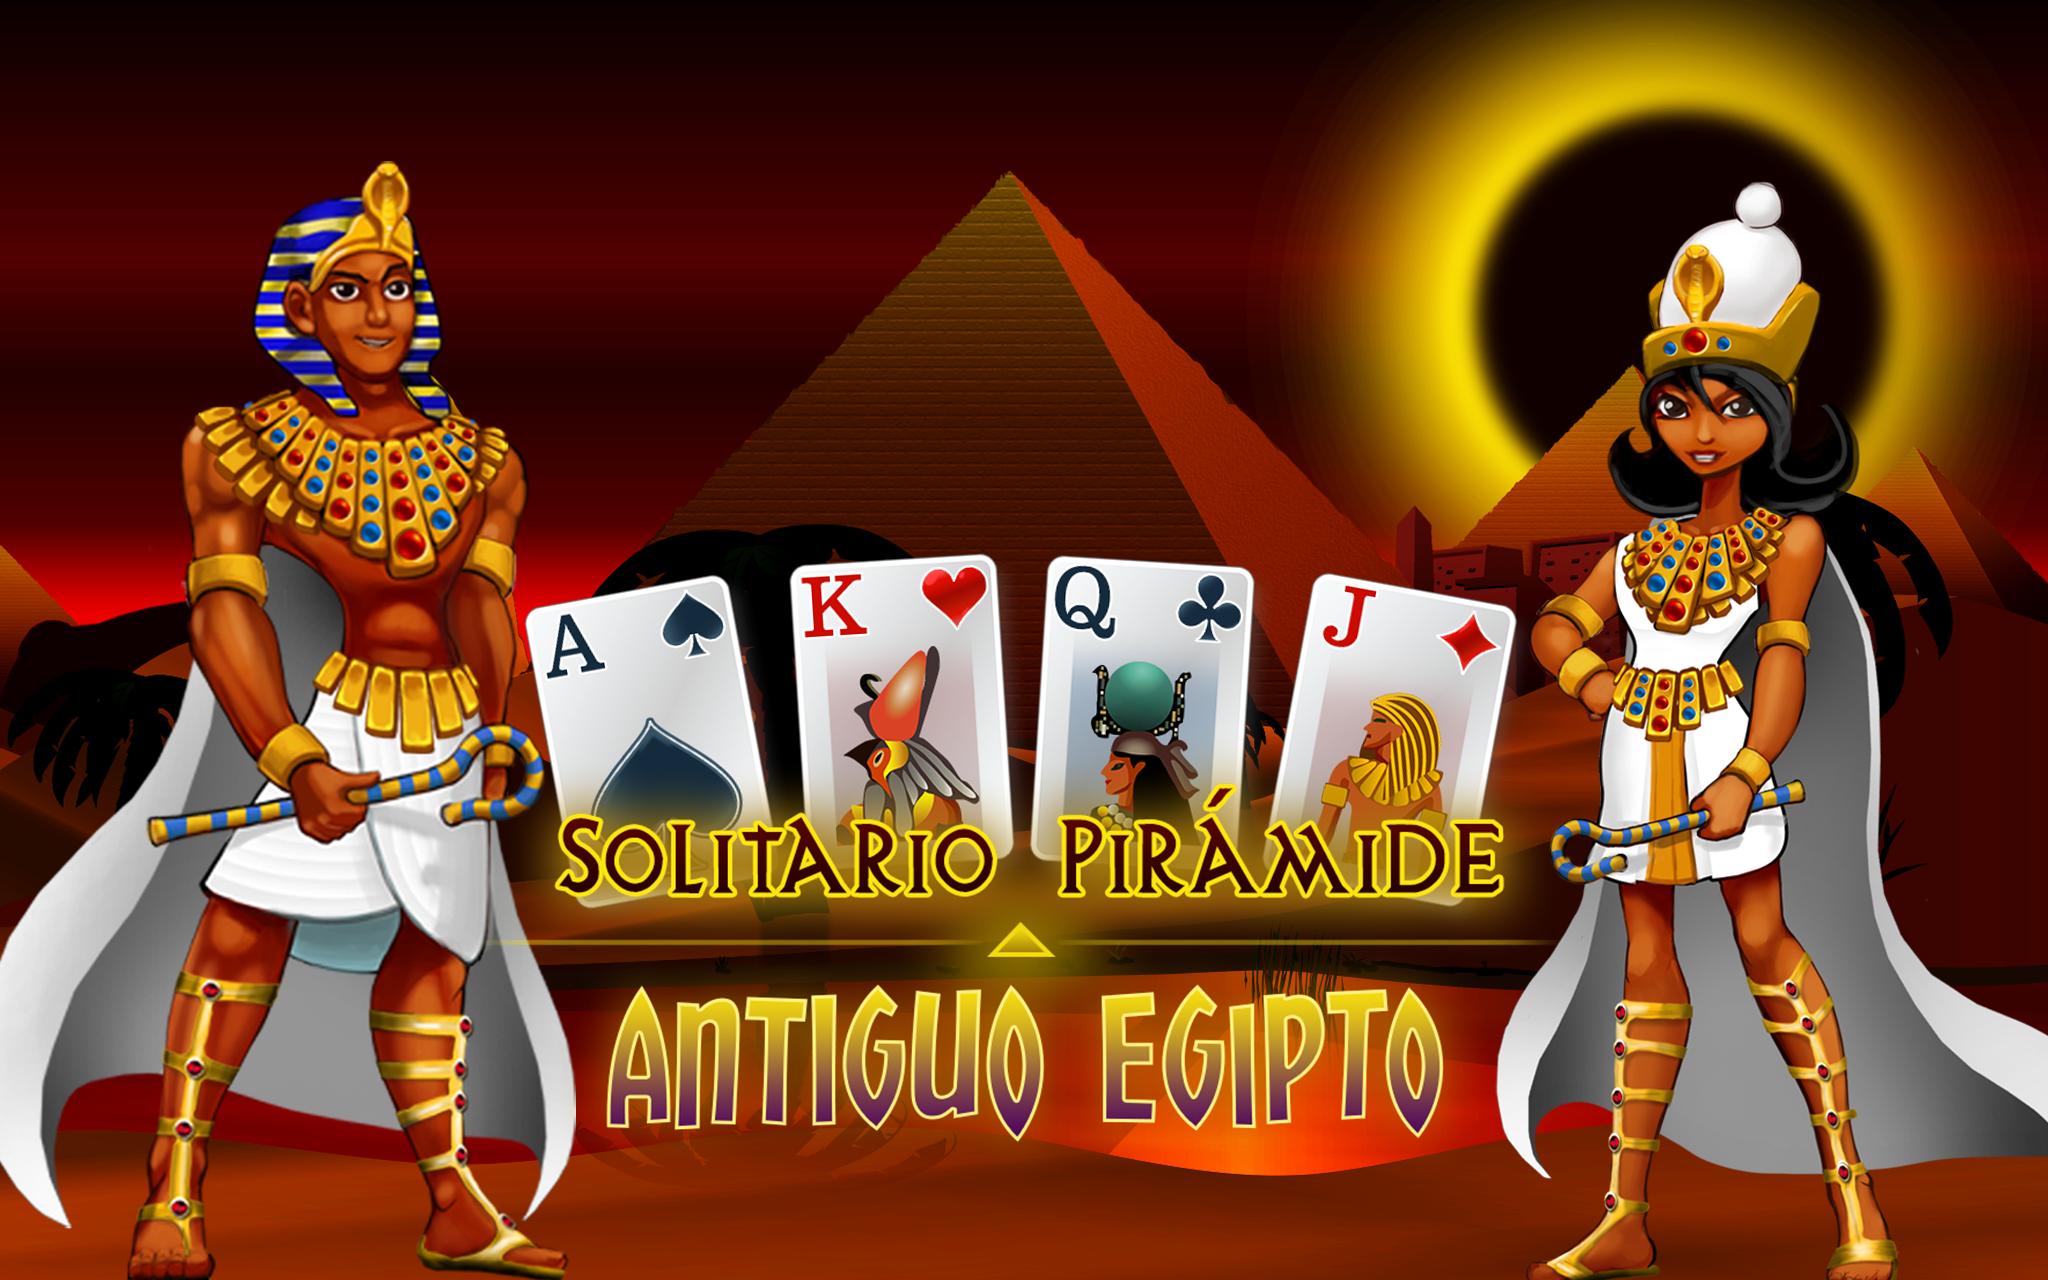 Solitario Pirámide Antiguo Egipto for Android - APK Download